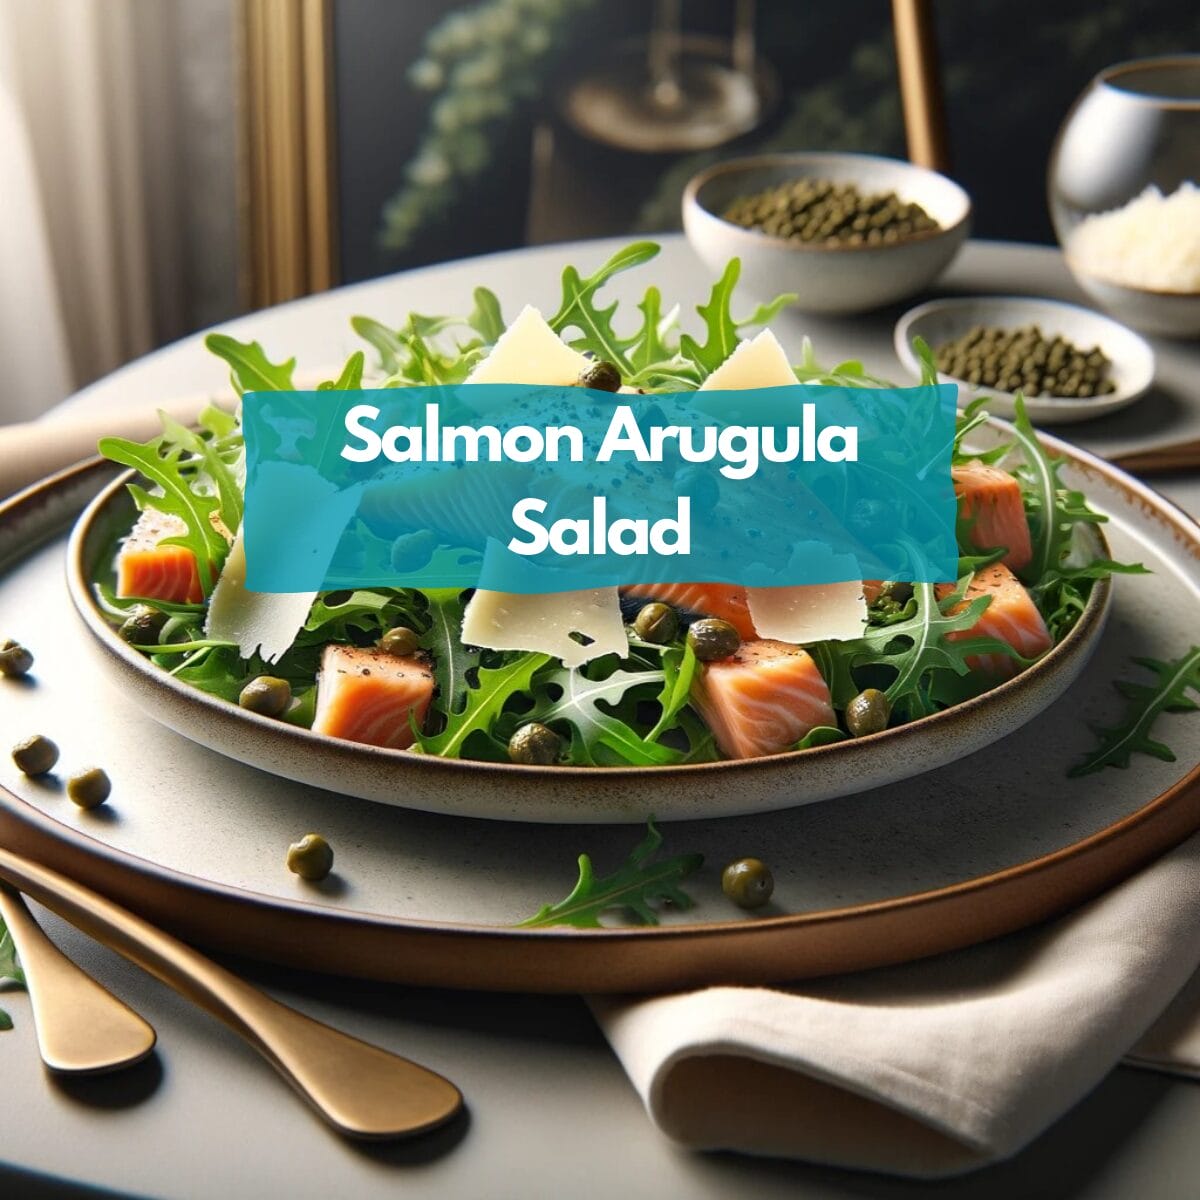 Salmon arugula salad